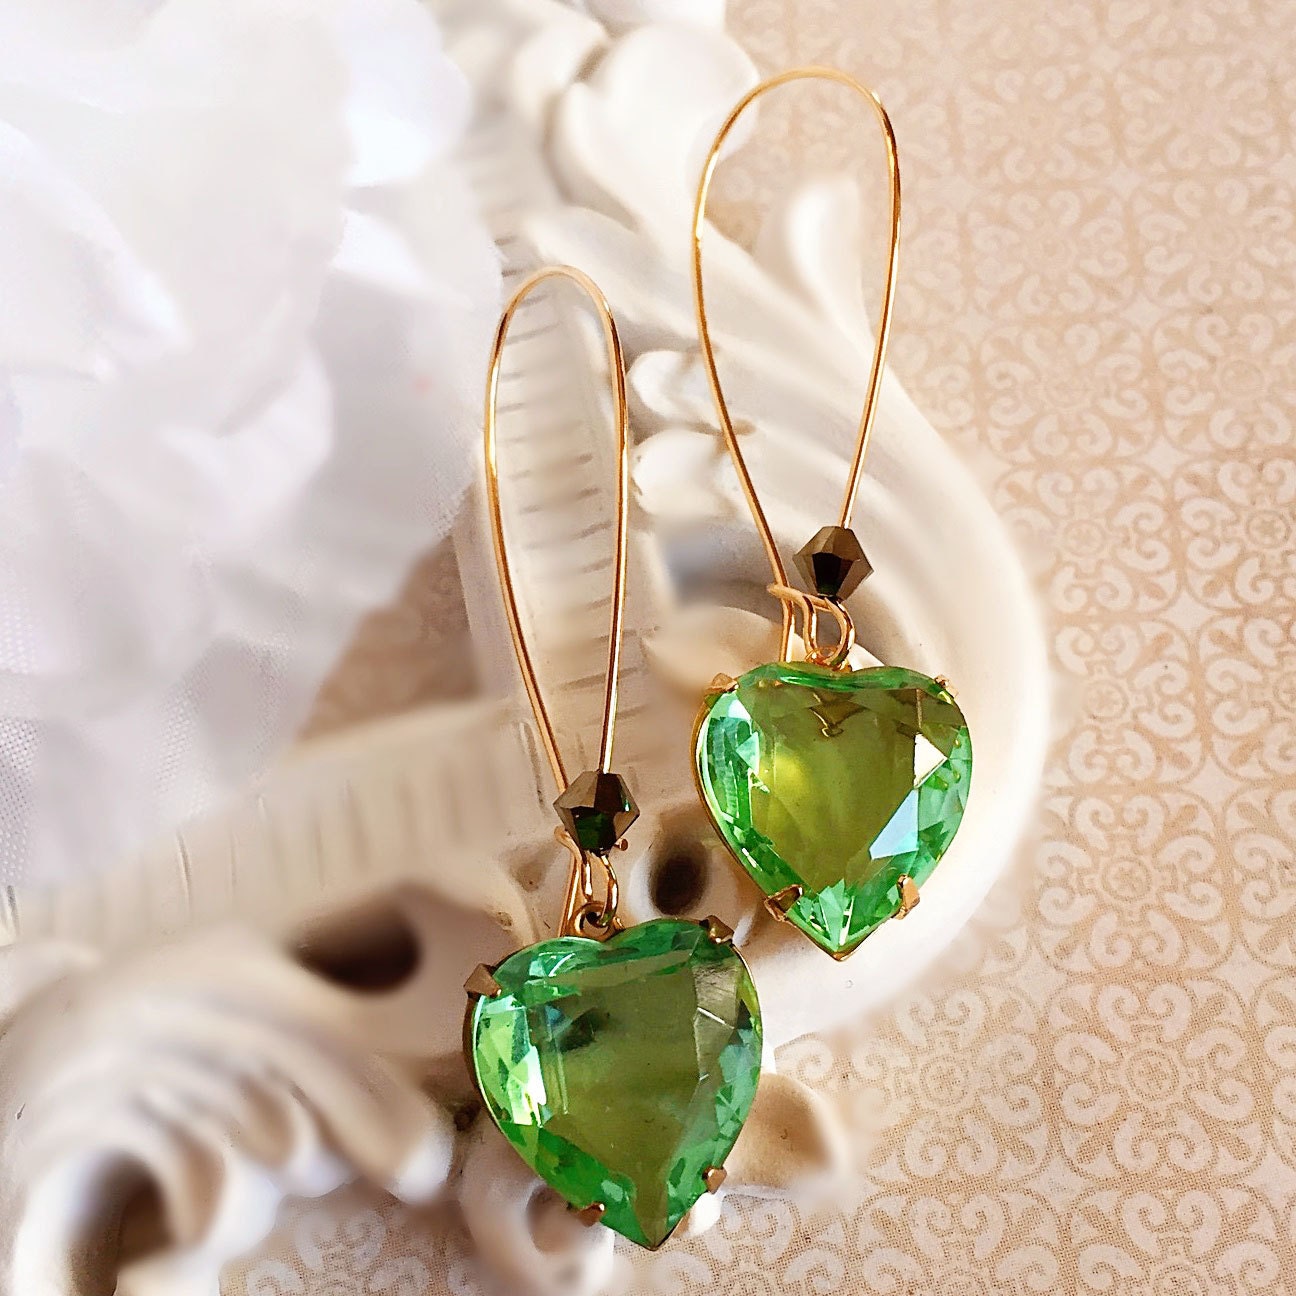 Heart Earrings - Greenery - Spring Wedding - Jewelry - DELIGHT Green